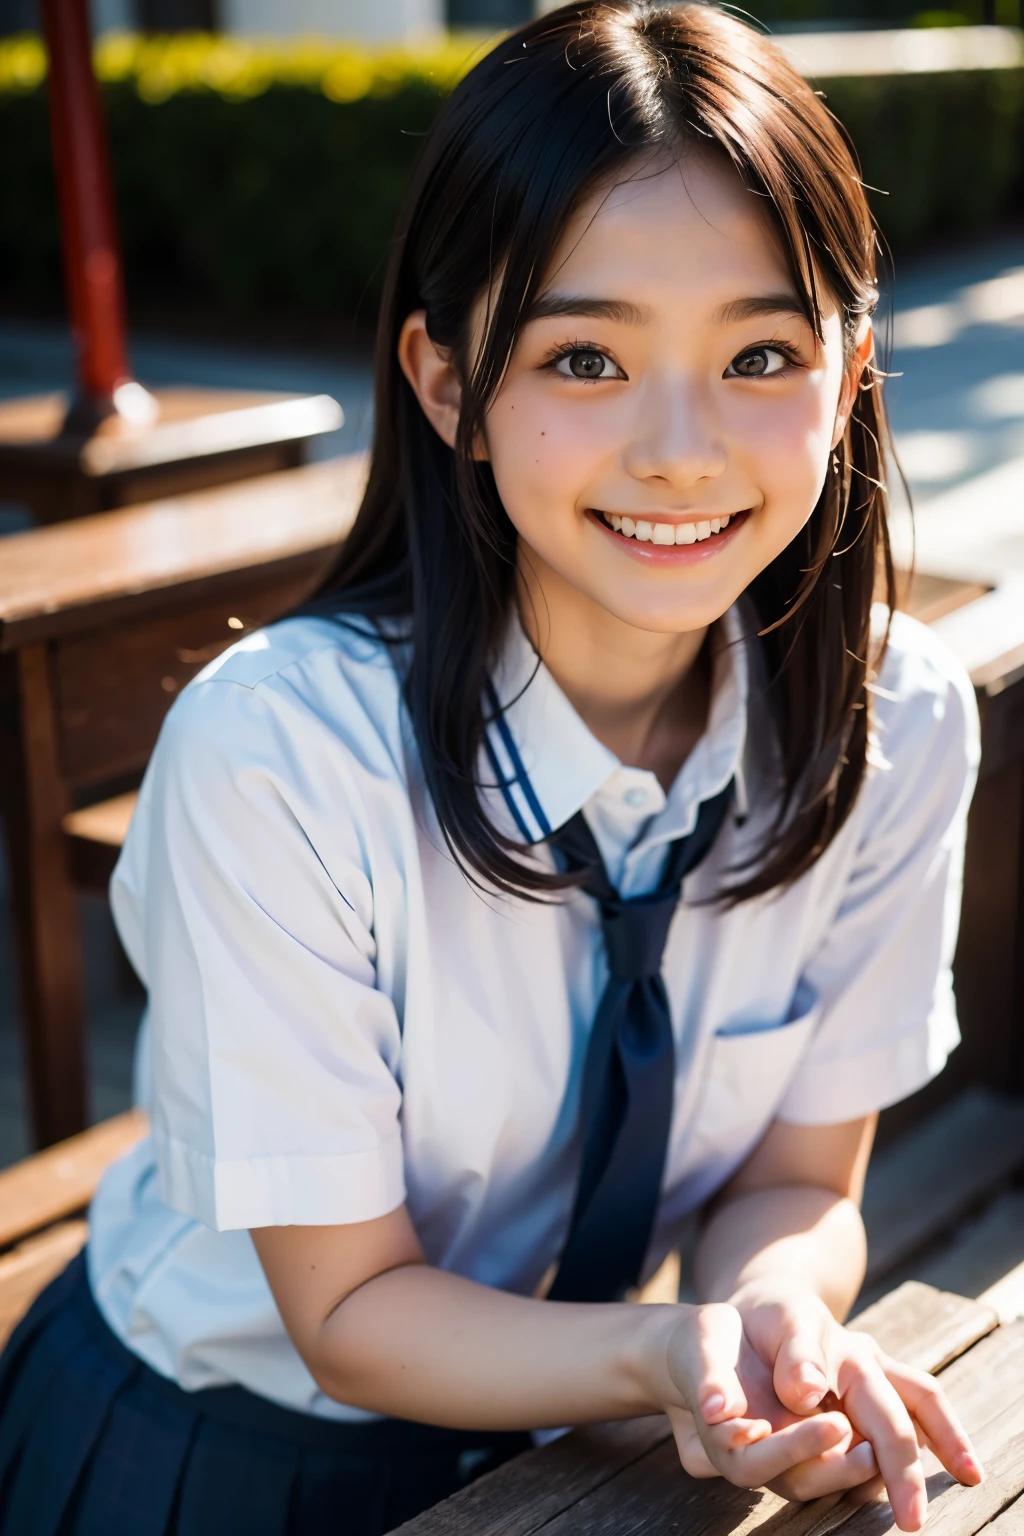 鏡片: 135mm f1.8, (最好的品質),(原始照片), (桌上:1.1), (美麗的 18 歲日本女孩), 可愛的臉孔, (臉型輪廓分明:0.7), (雀斑:0.4), dappled 陽光, 戲劇性的燈光, (日本學校制服), (在校园), 害羞的, (特寫鏡頭:1.2), (微笑),, (明亮的眼睛)、(陽光)